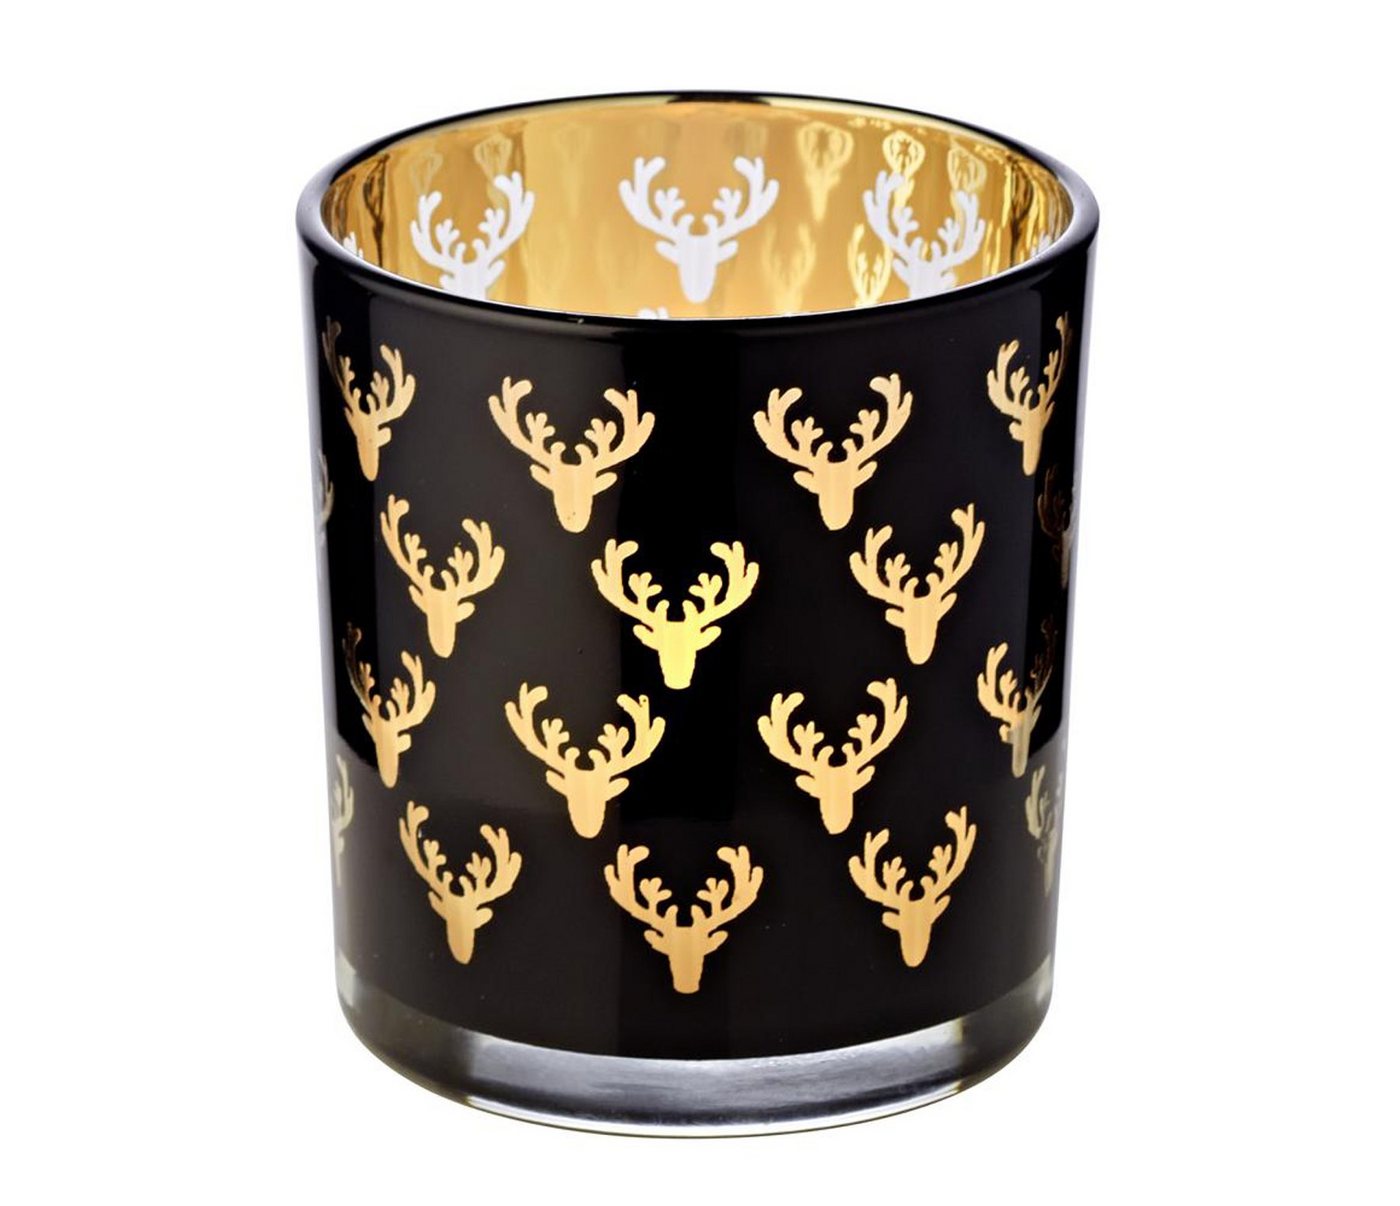 EDZARD Windlicht Ben, Kerzenglas mit Hirsch-Motiv in Gold-Optik, Teelichtglas für Teelichter, Höhe 8 cm, Ø 7 cm von EDZARD